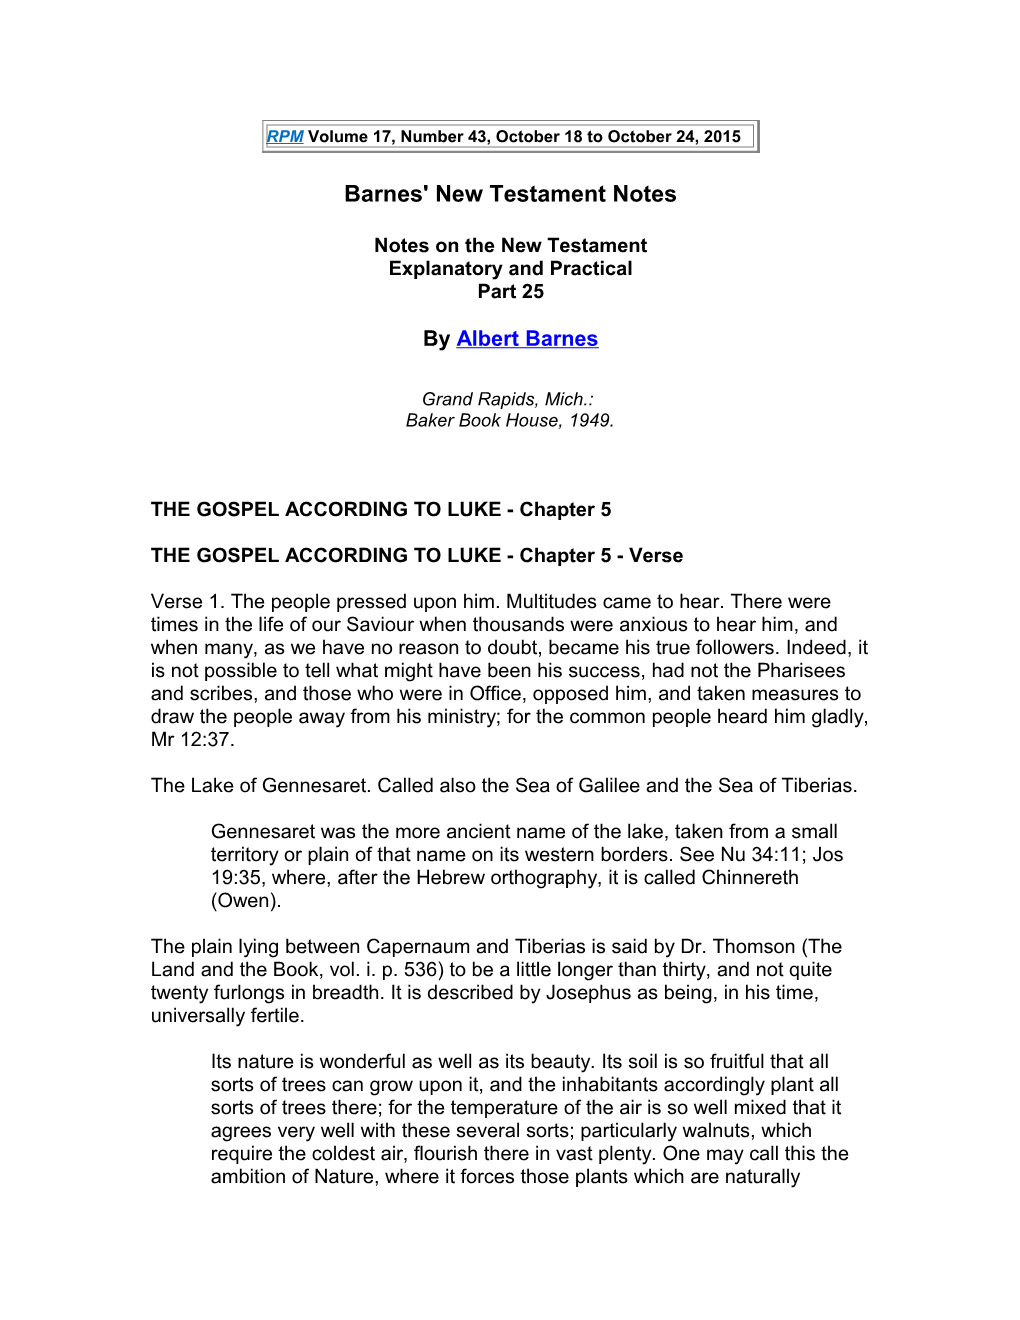 Barnes' New Testament Notes